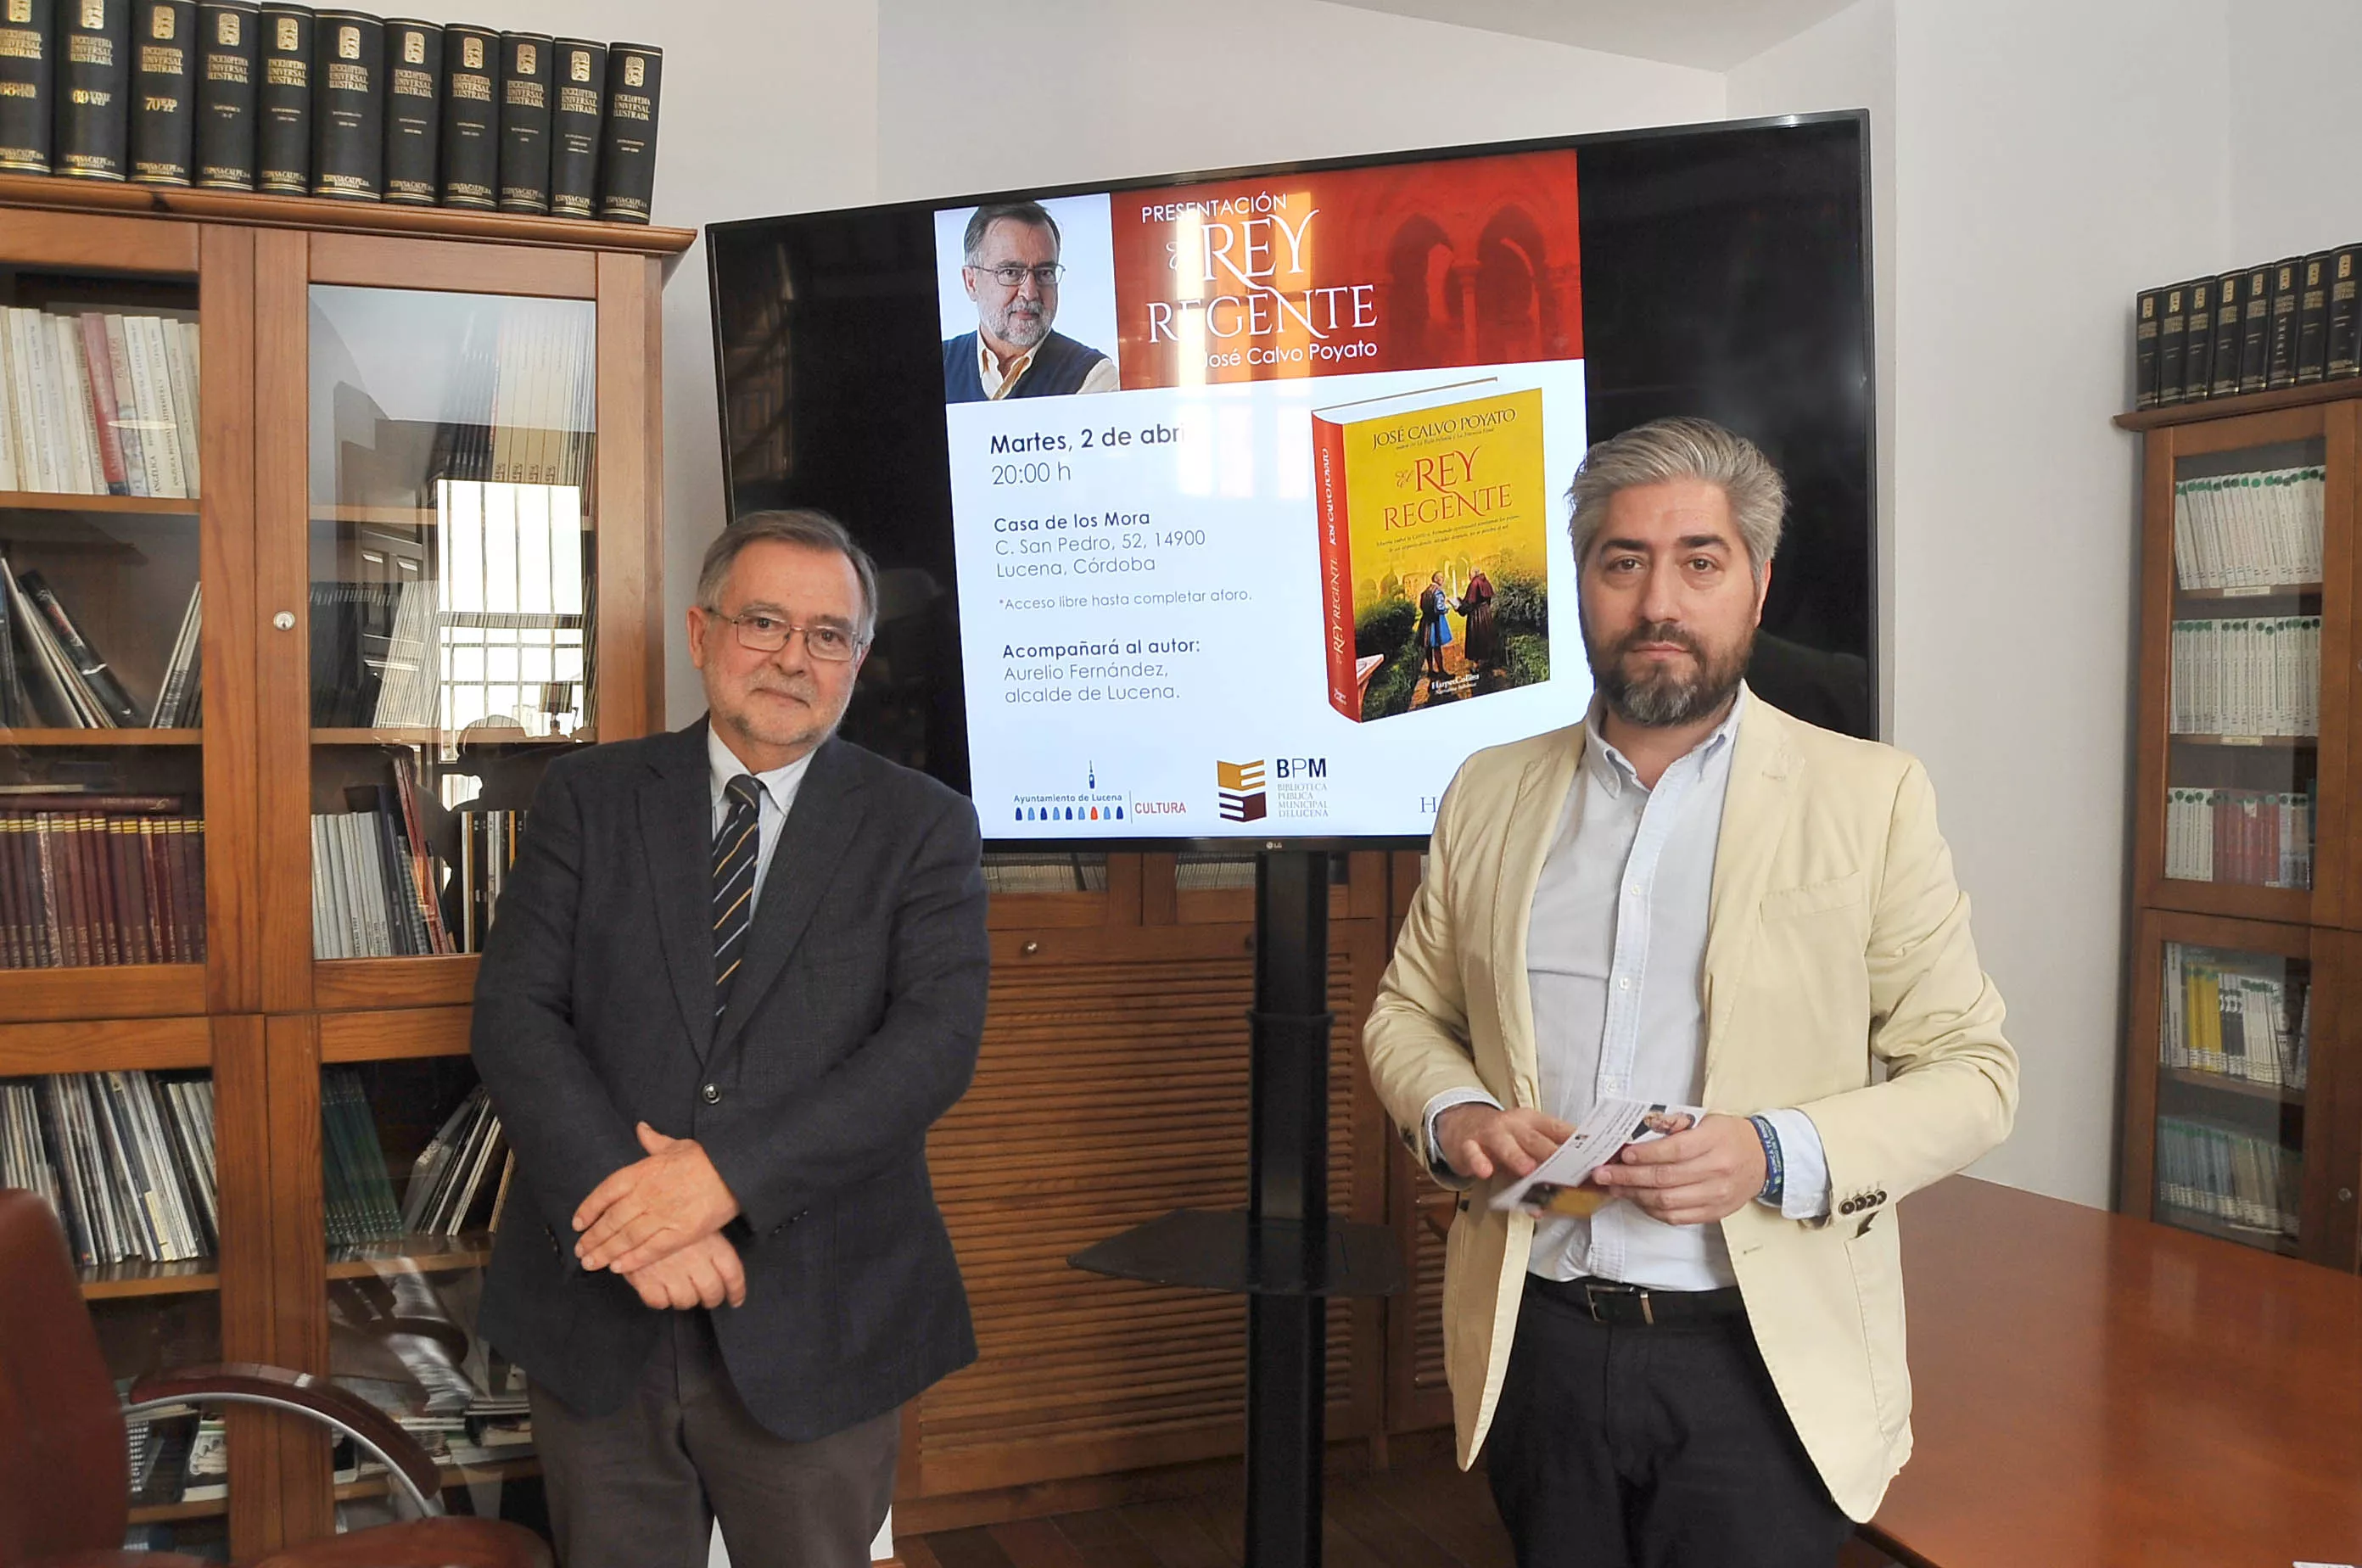 Francisco Barbancho y José Calvo anunciaron la presentación de la novela “El Rey regente”